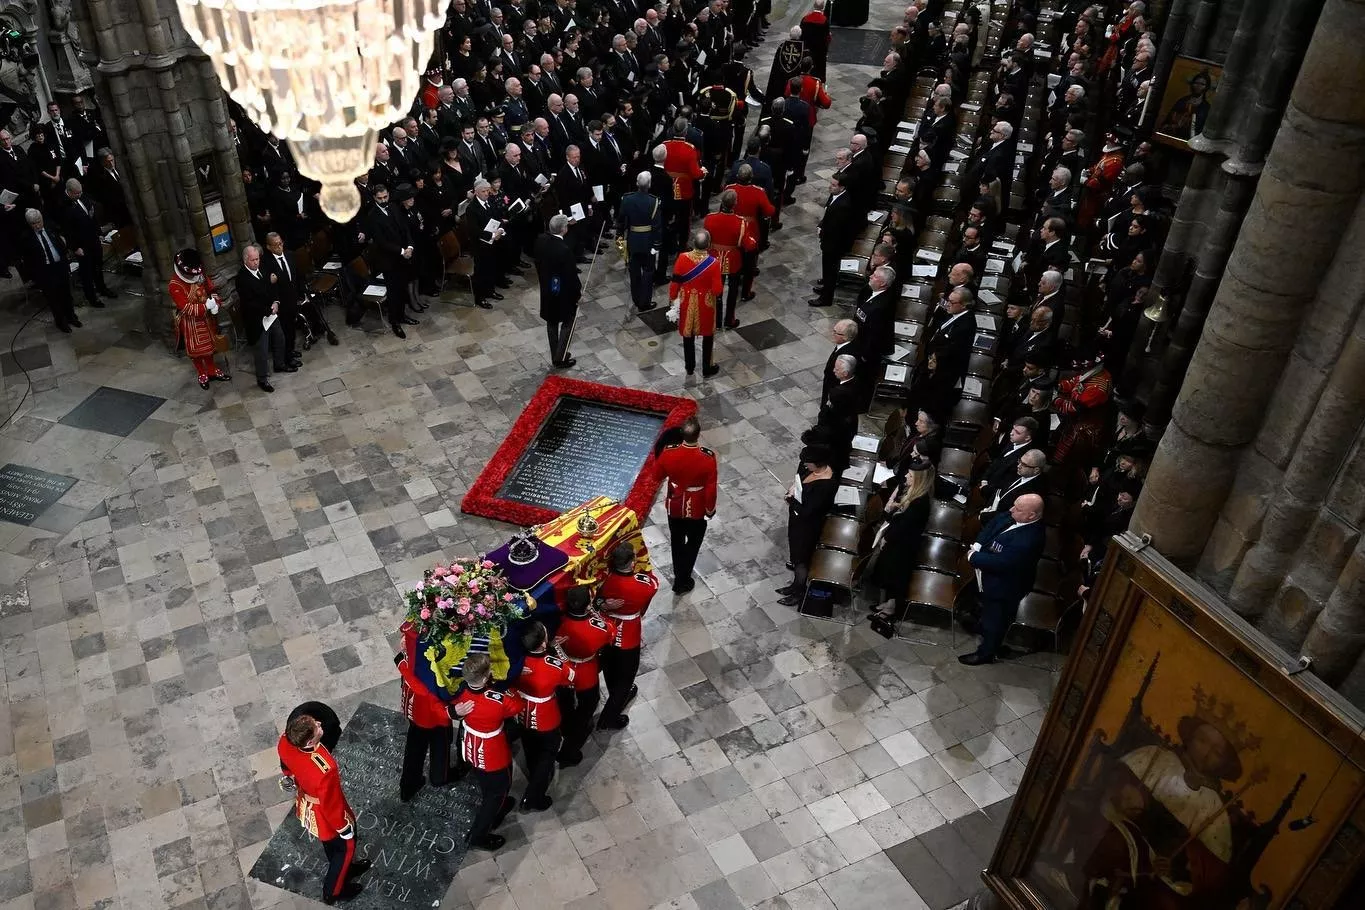 لحظة الوداع الأخيرة حلّت... هذه هي أبرز تفاصيل وصور جنازة الملكة اليزابيث المهيبة